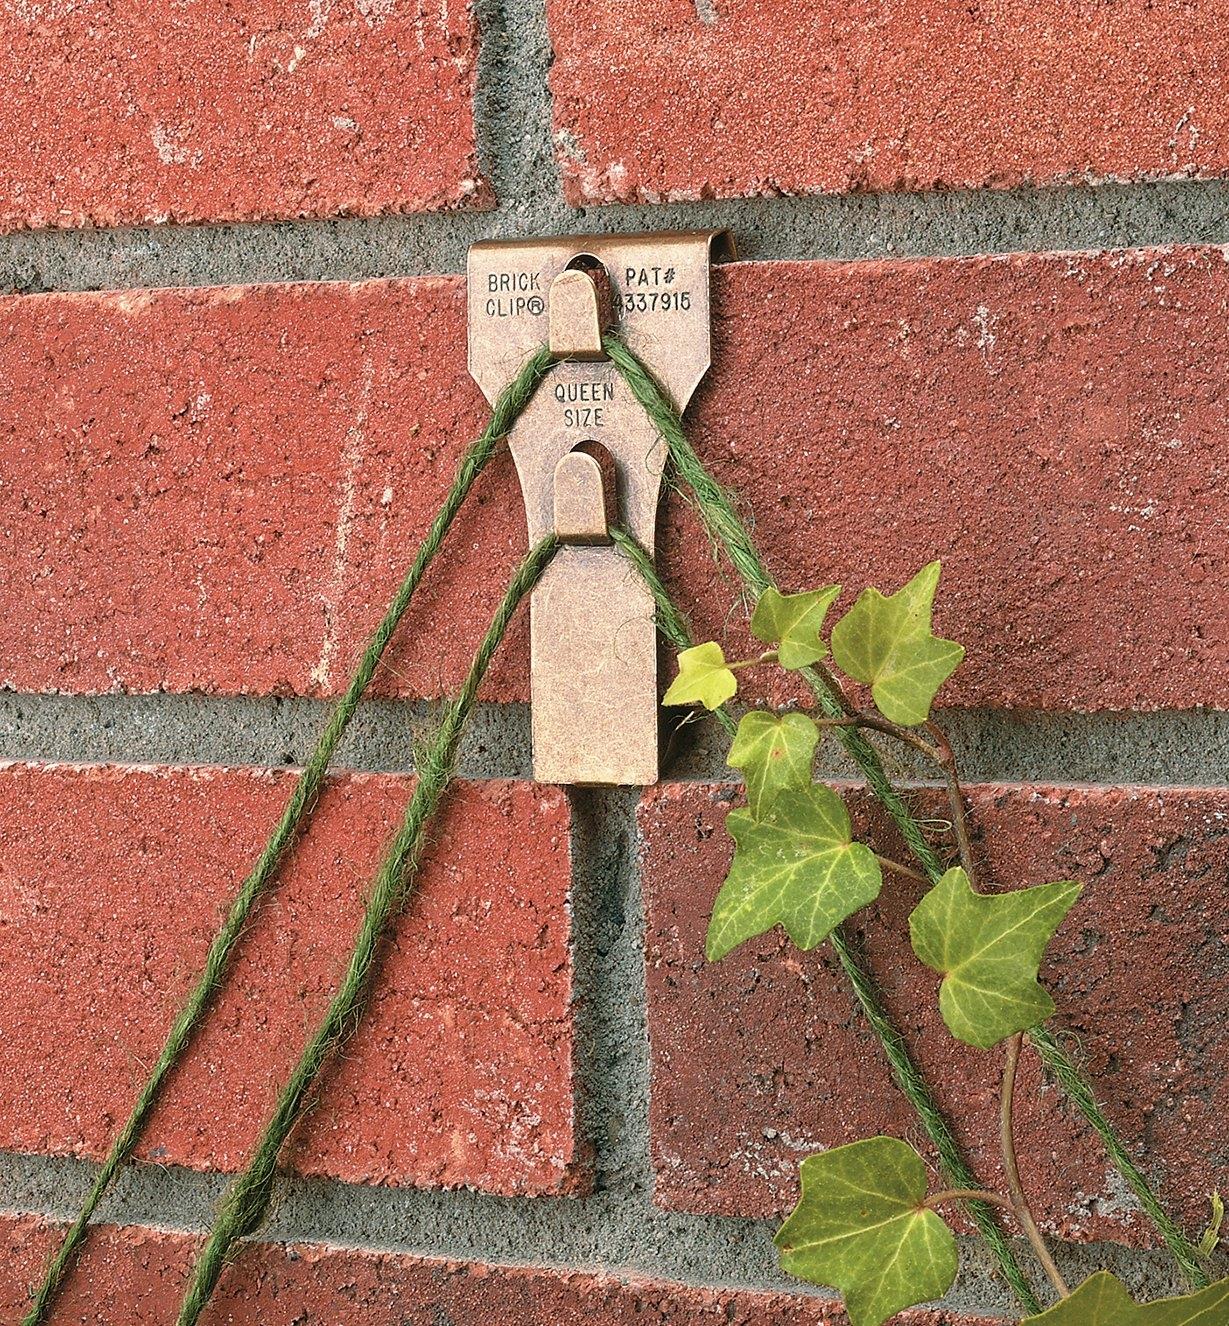 Crochet à pince Brick Clip retenant un treillis de corde sur un mur de briques